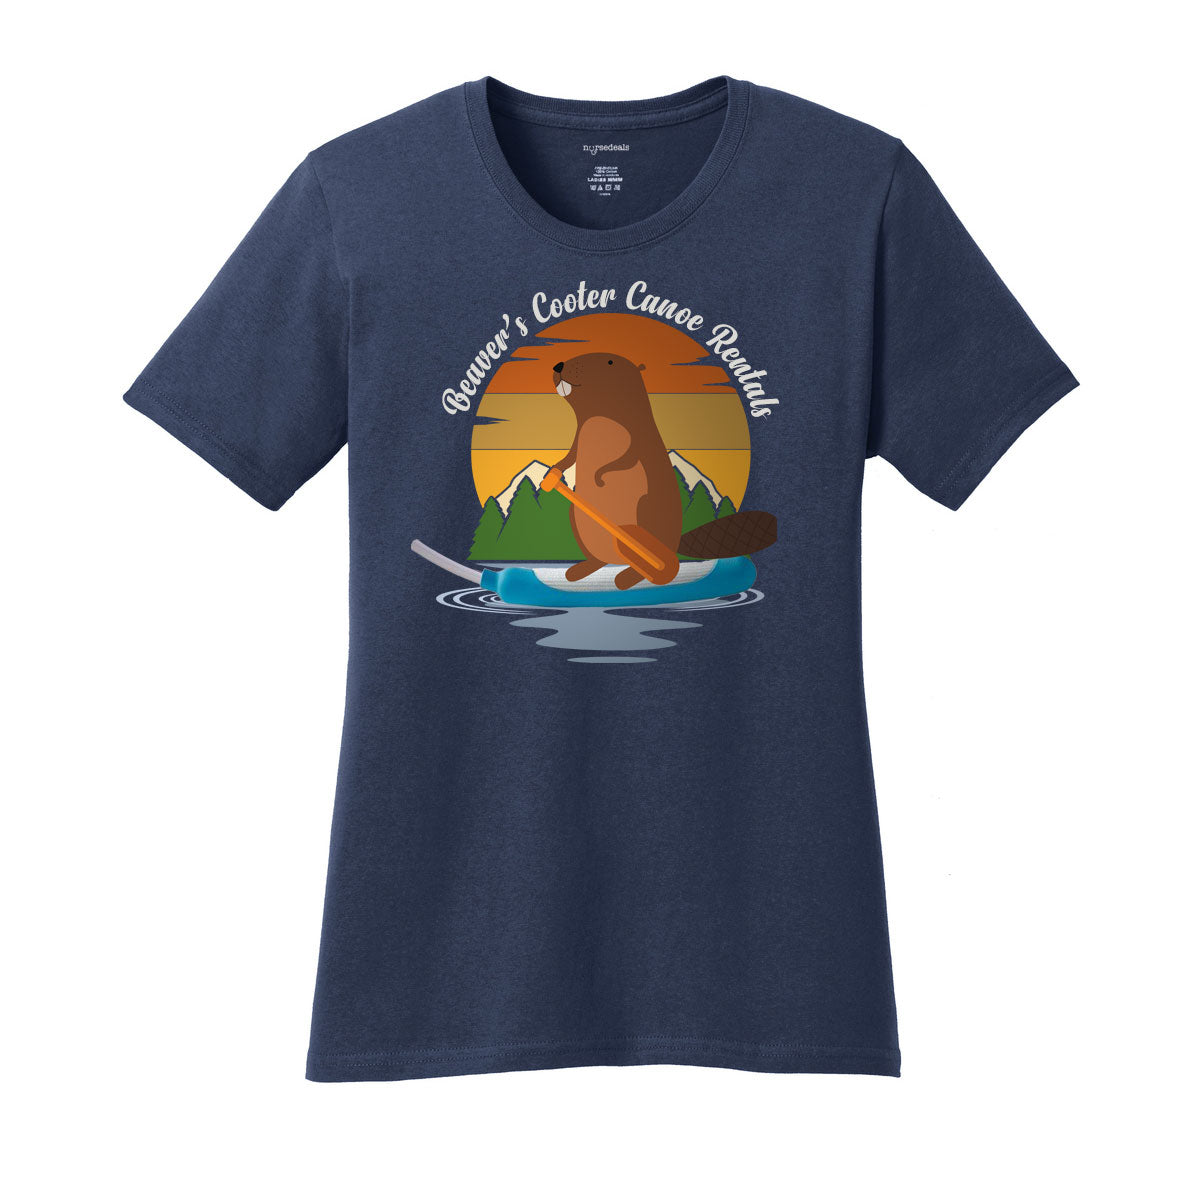 Cooter Canoe Shirt